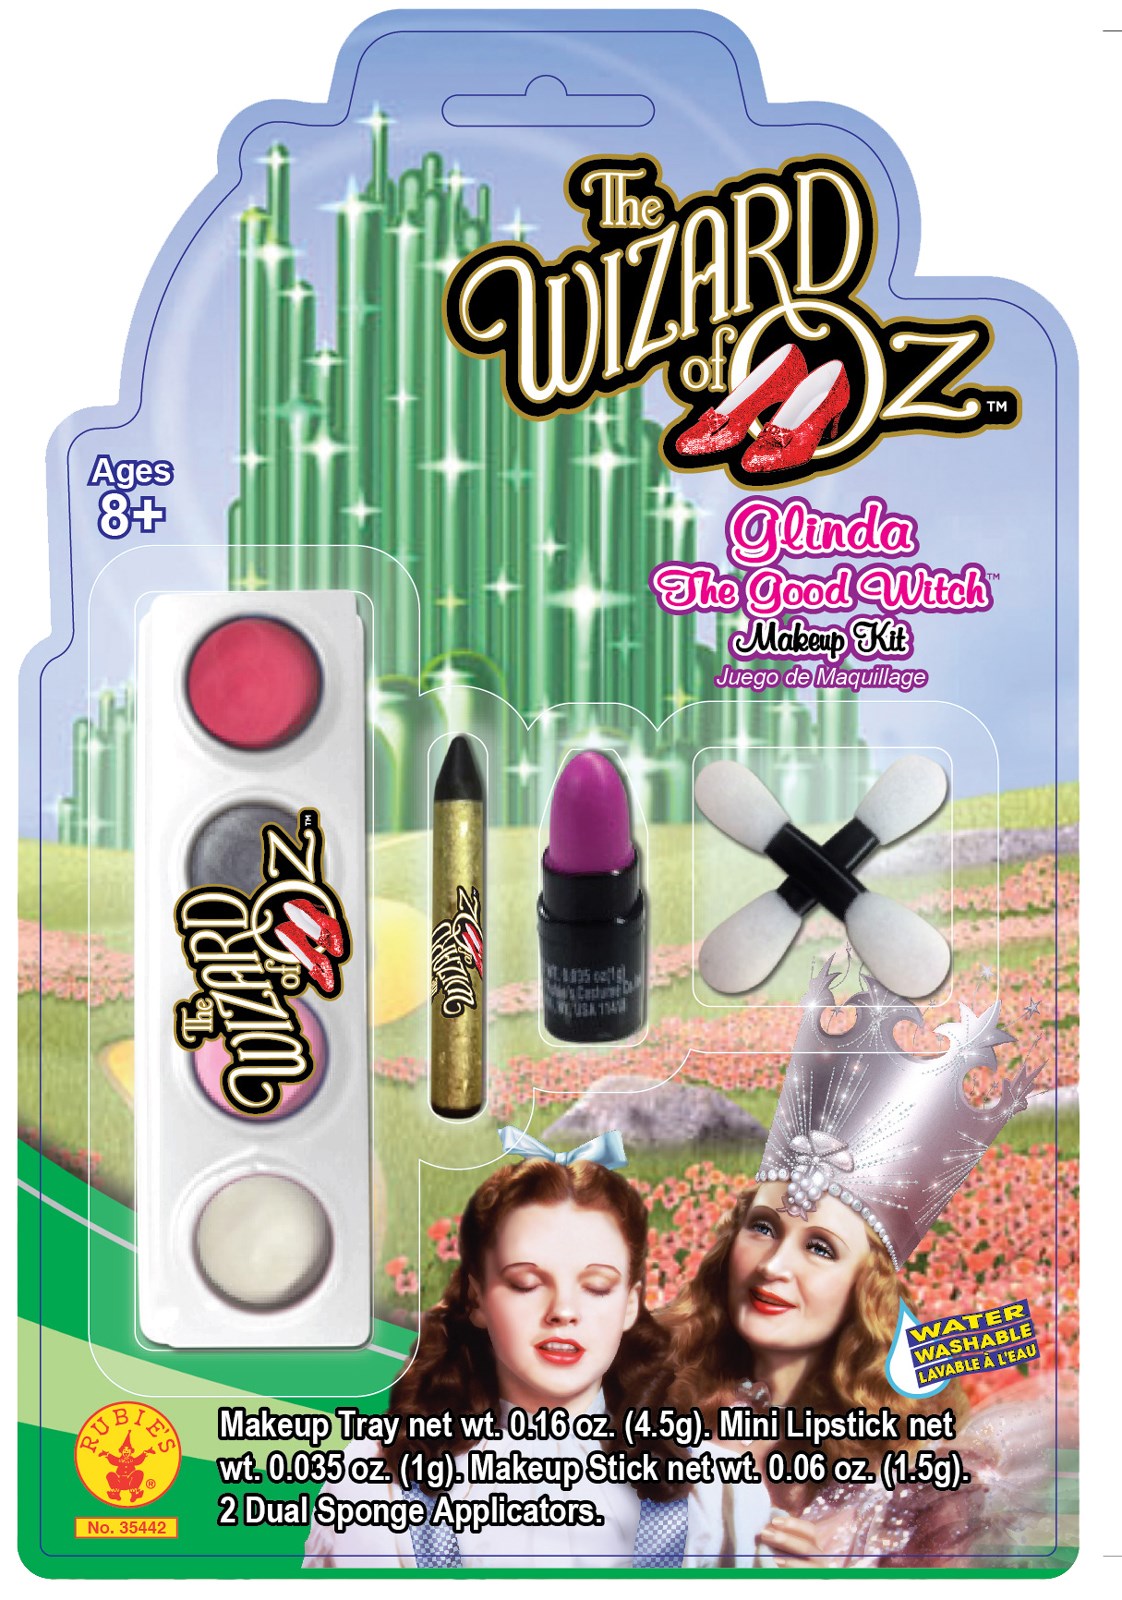 Wizard of Oz - Glinda Girls Makeup Kit